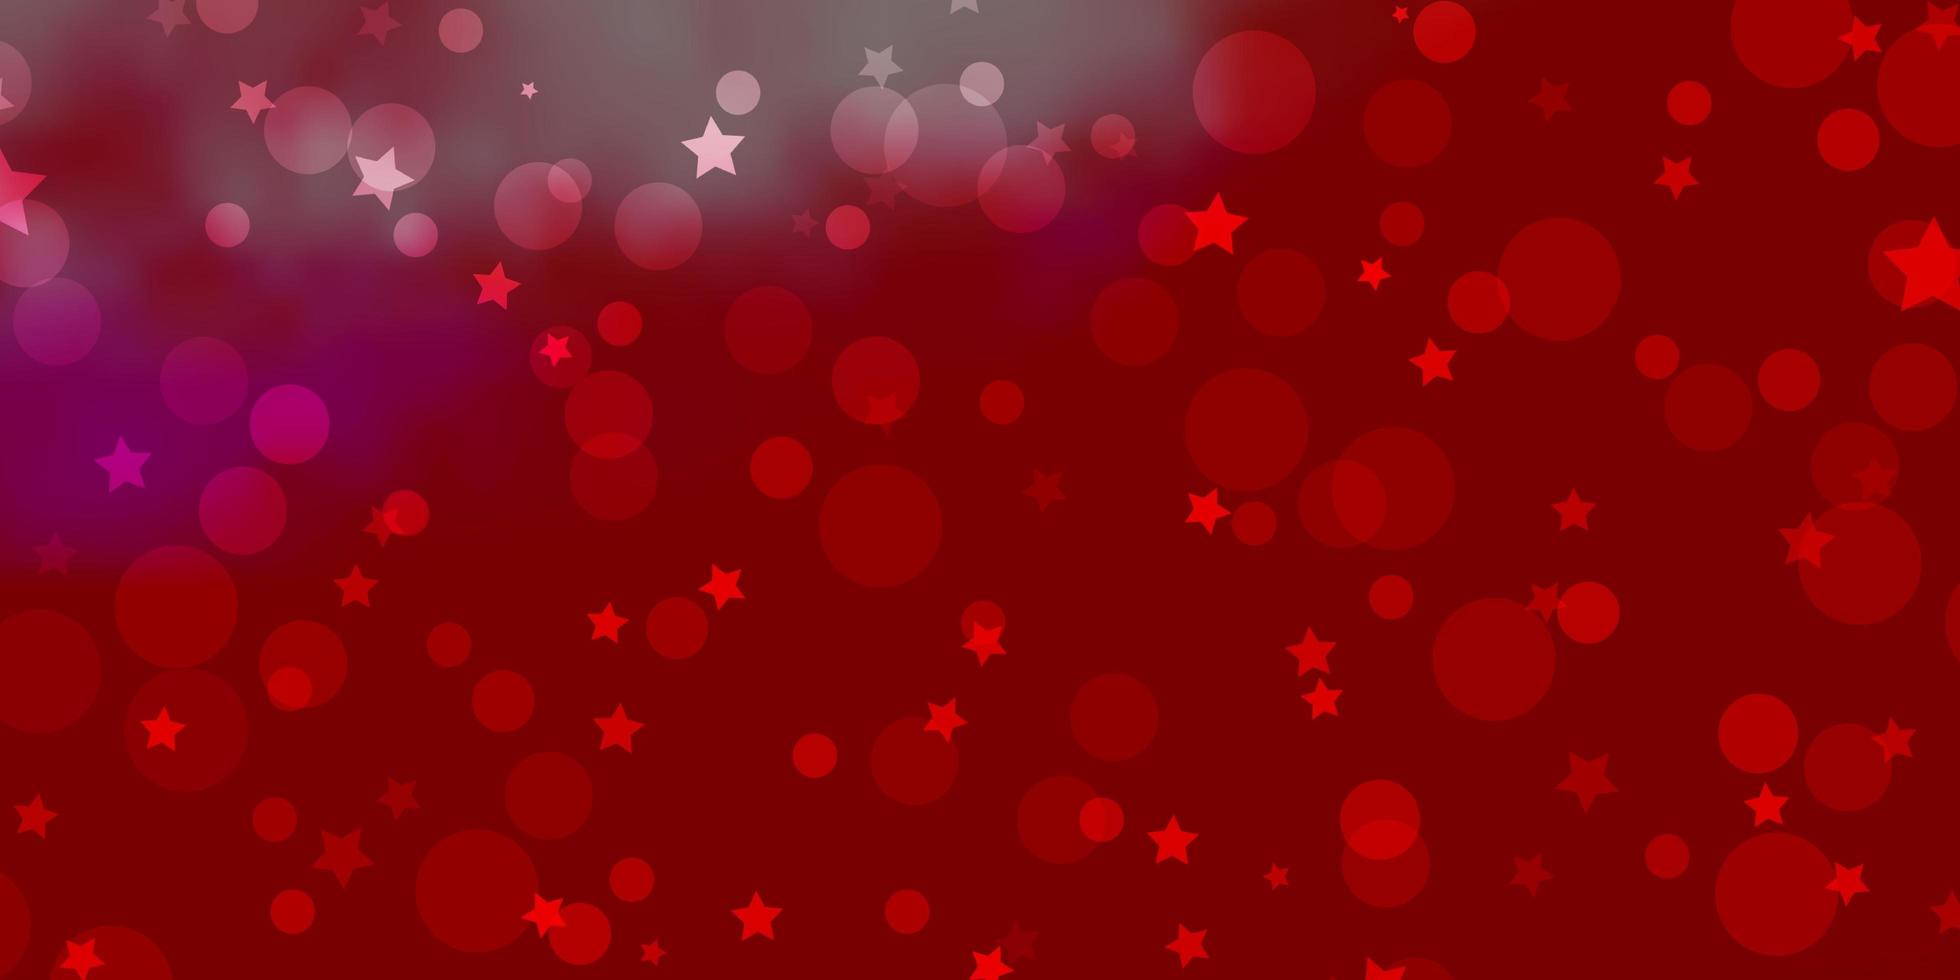 Telón de fondo de vector rojo claro con círculos, estrellas. diseño abstracto en estilo degradado con burbujas, estrellas. textura para persianas, cortinas.